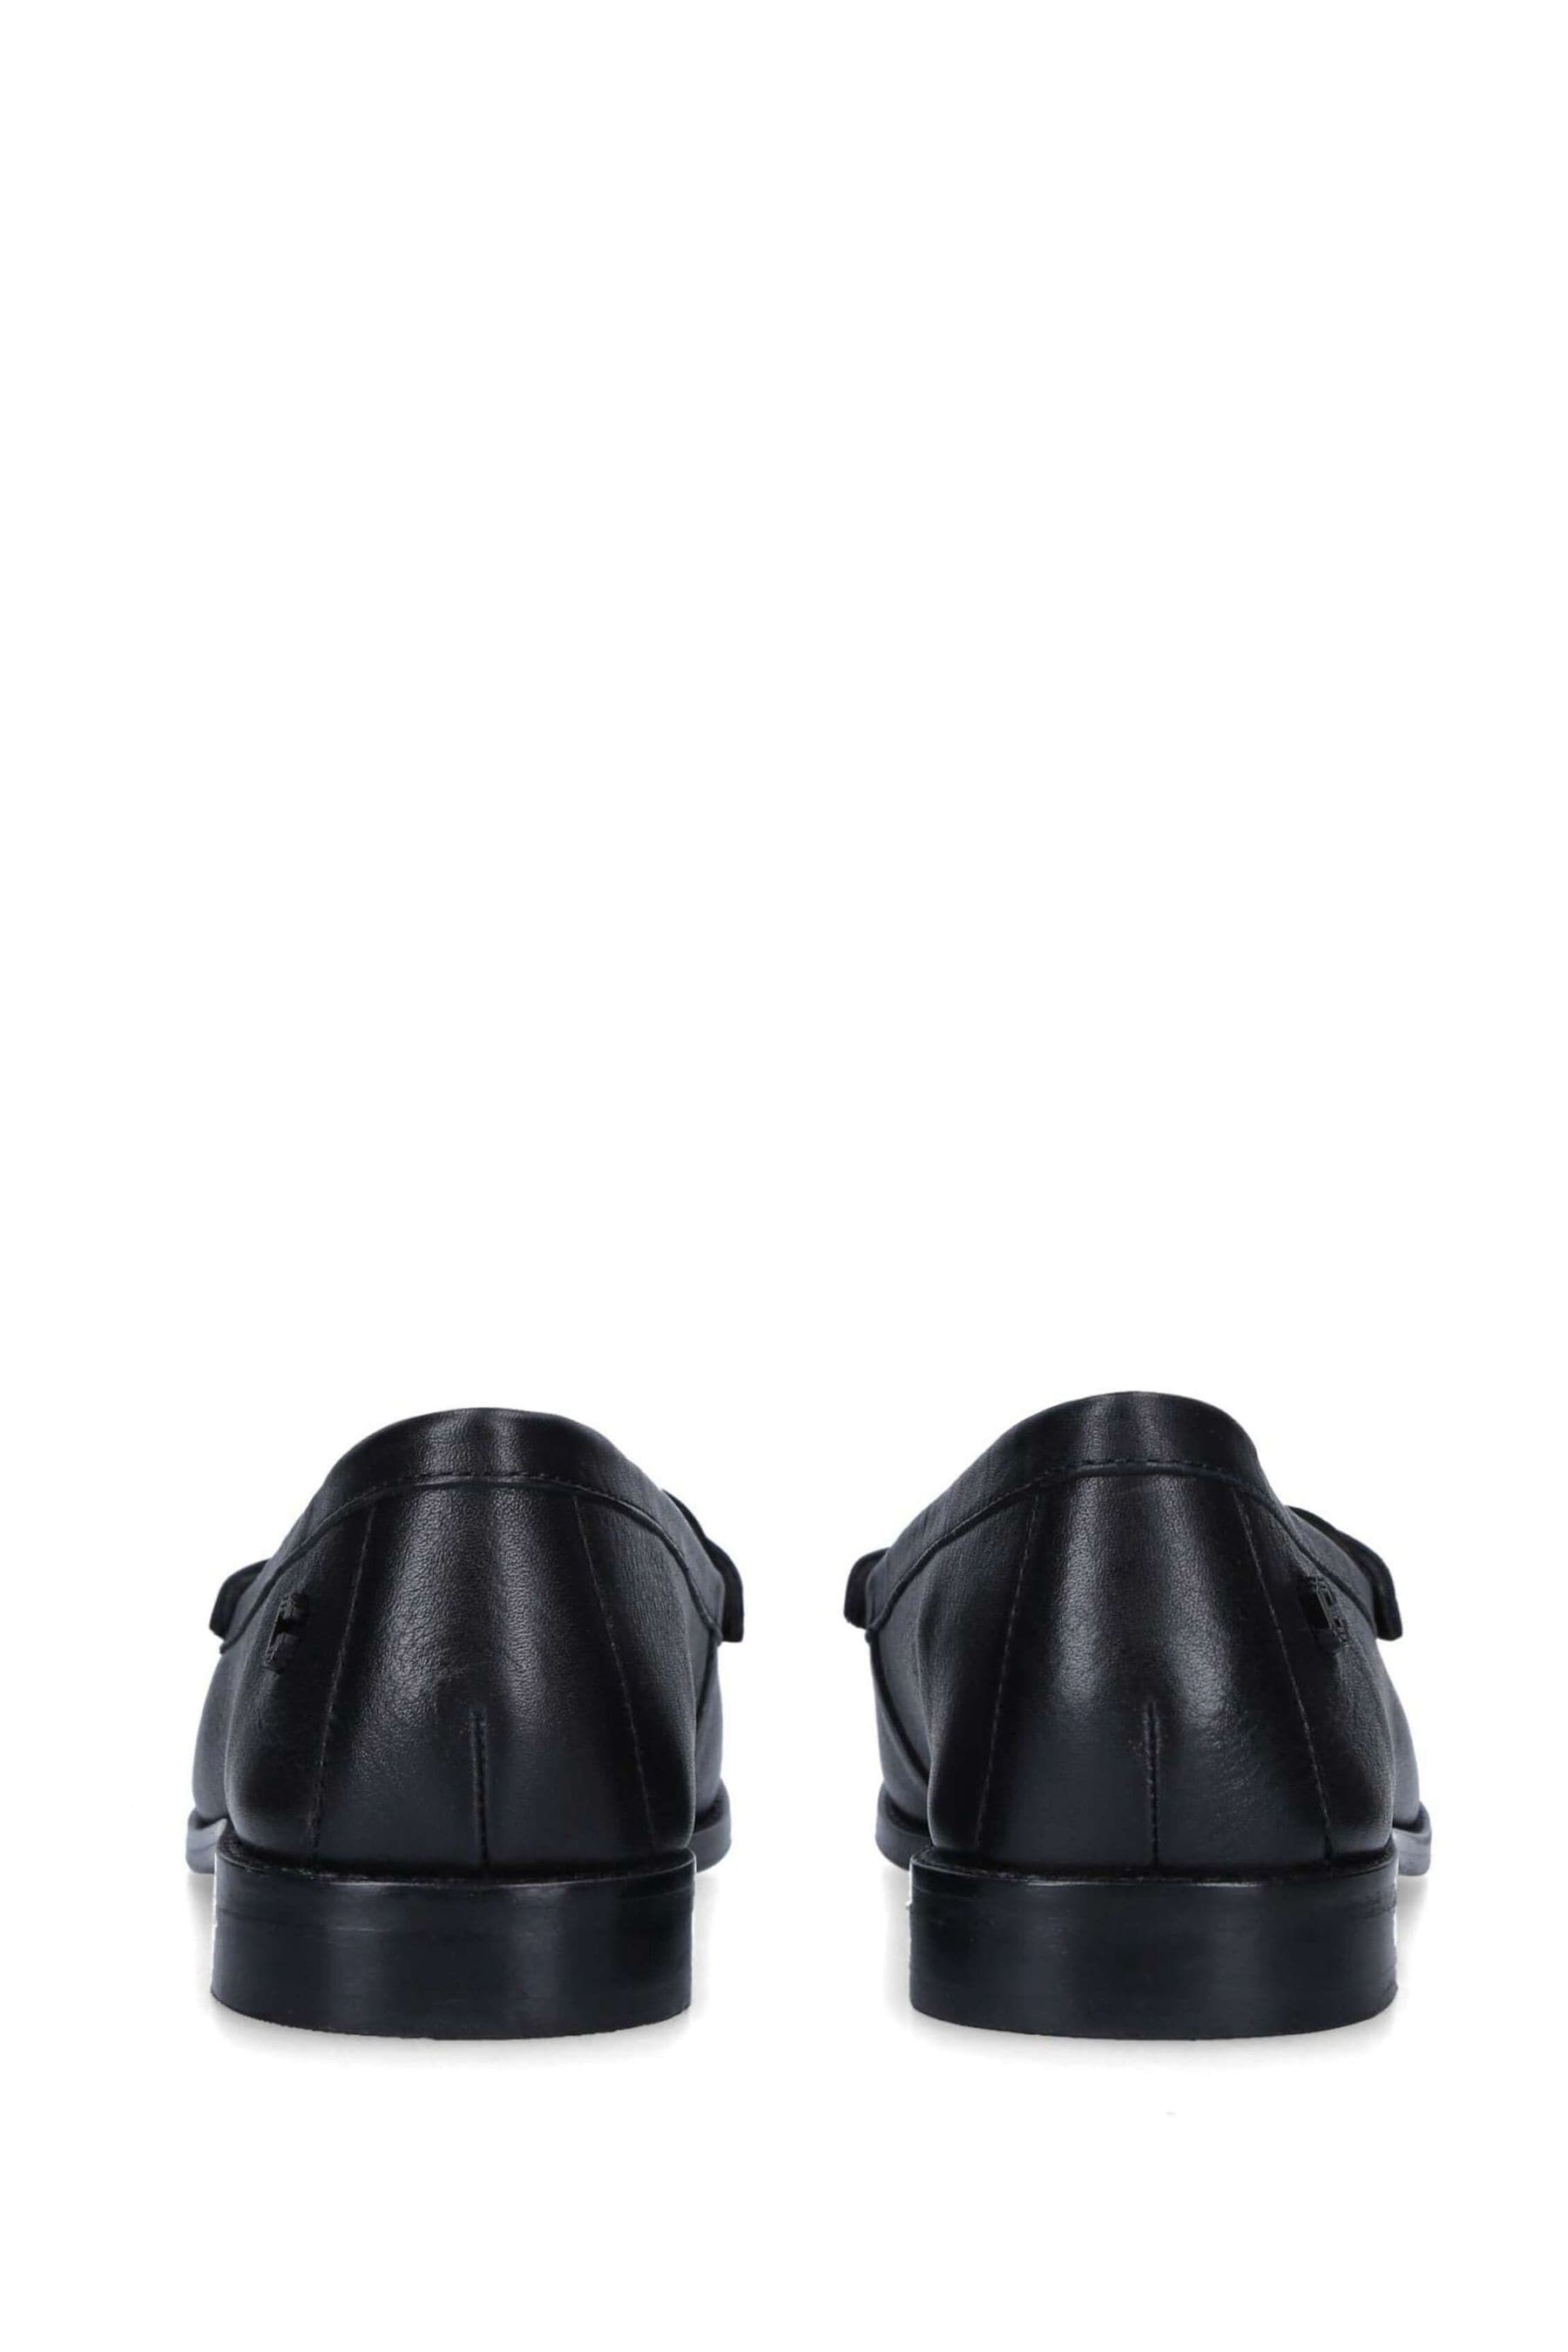 Buy Carvela Comfort Black Crackle Shoes from the Next UK online shop